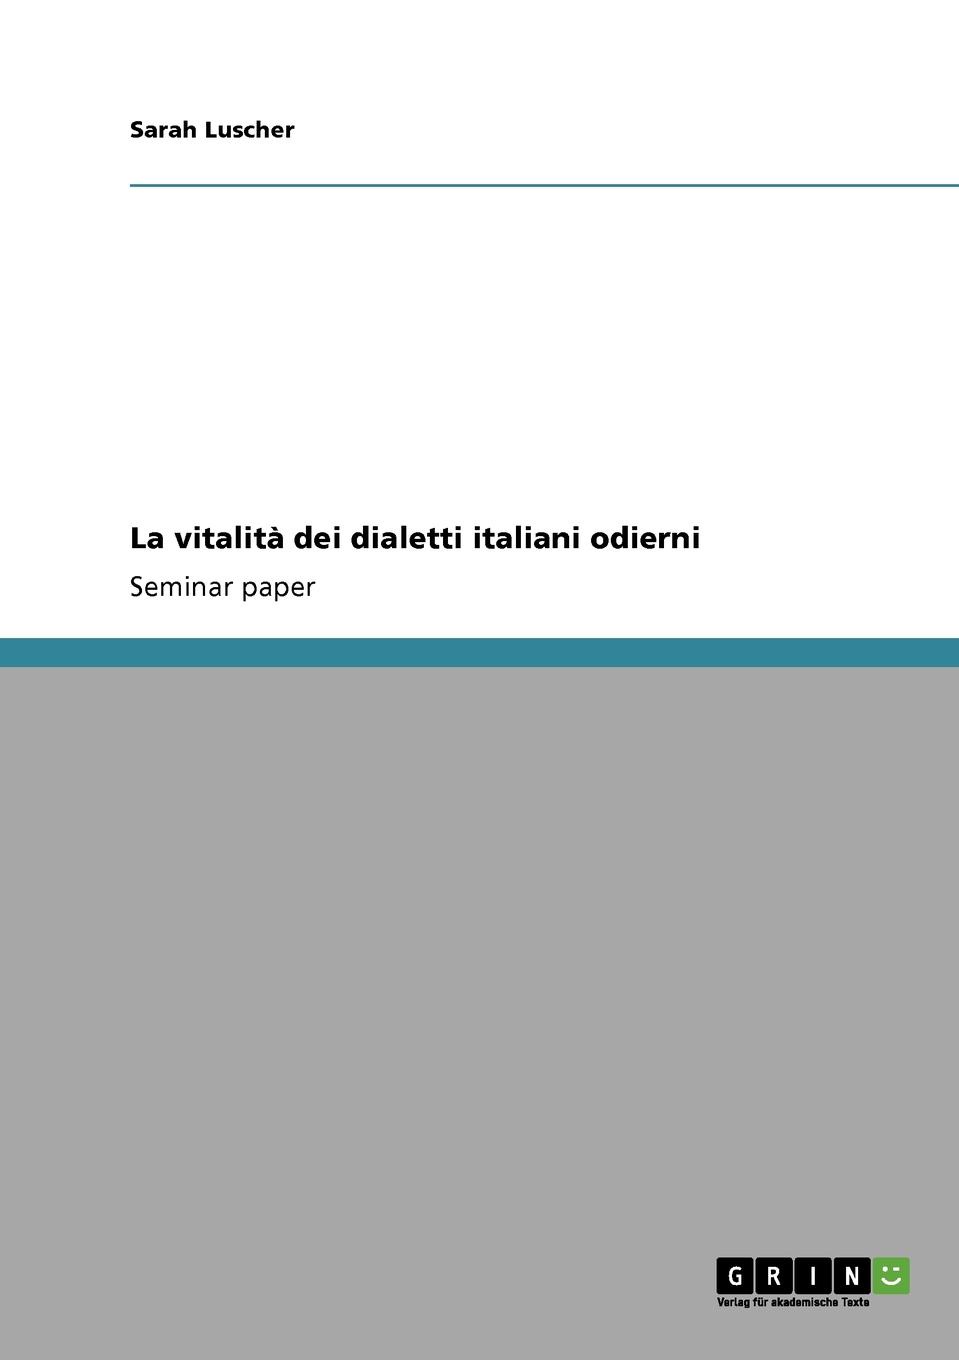 Sarah Luscher La vitalita dei dialetti italiani odierni